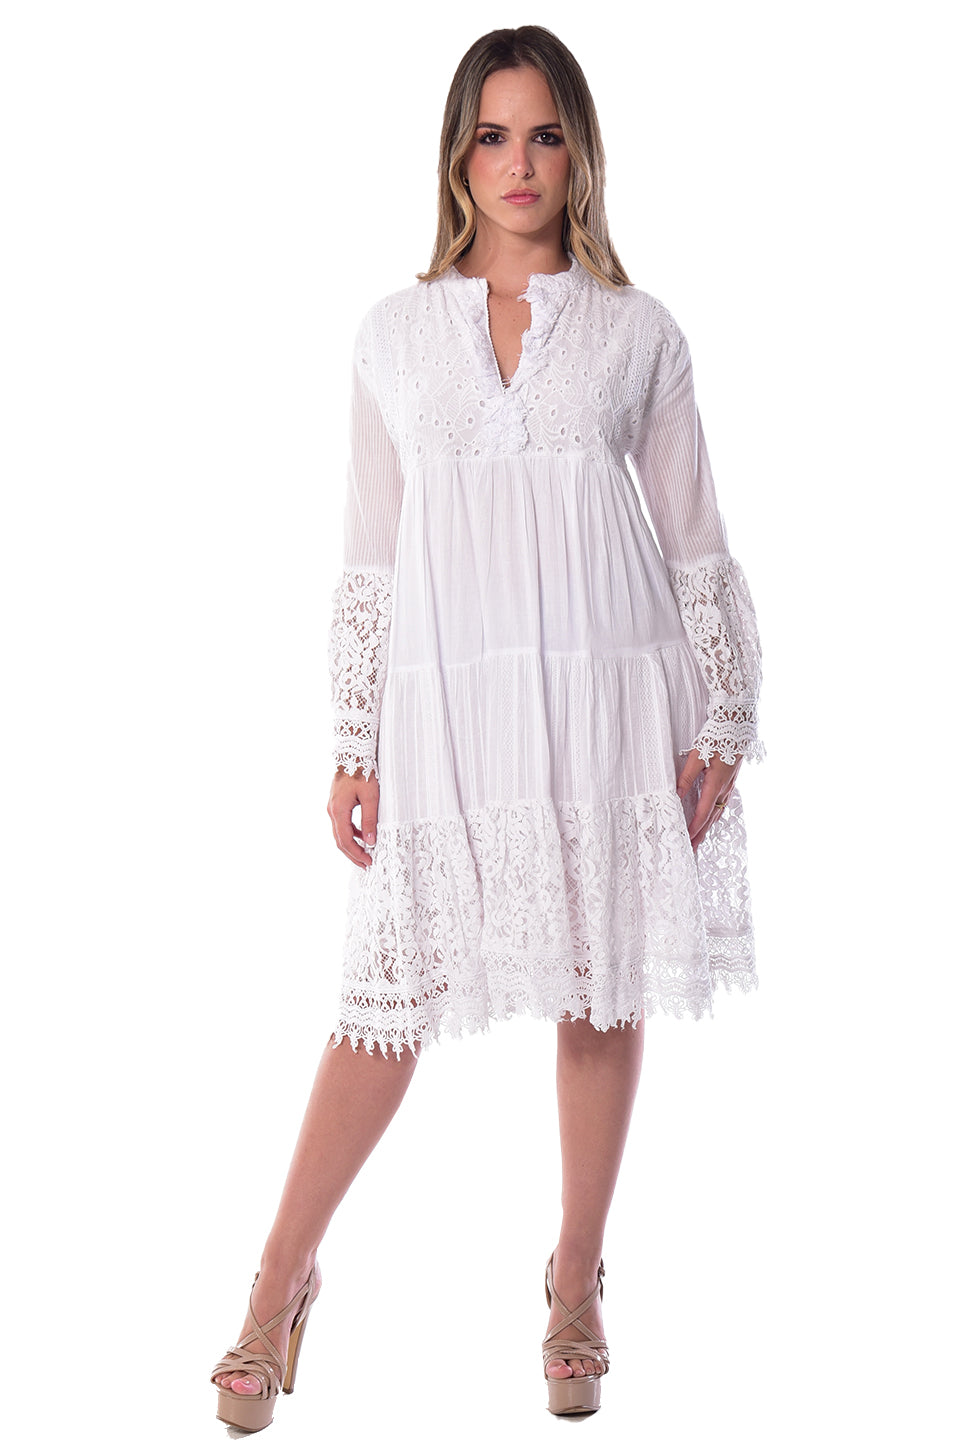 Women's White Lace Hem Frill Skirts